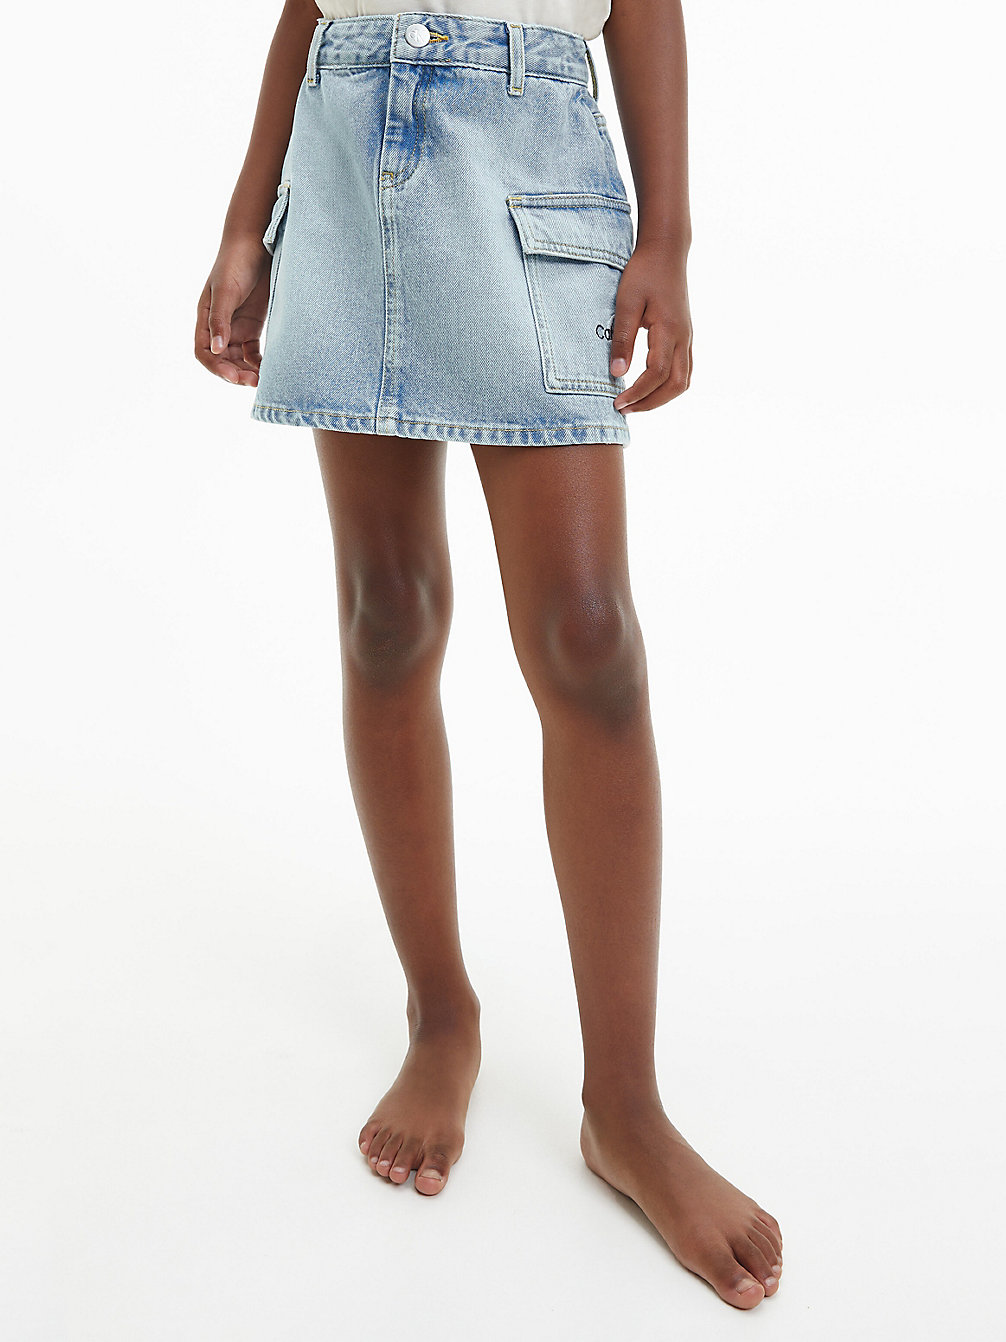 CHALKY BLUE Denim Skirt undefined girls Calvin Klein